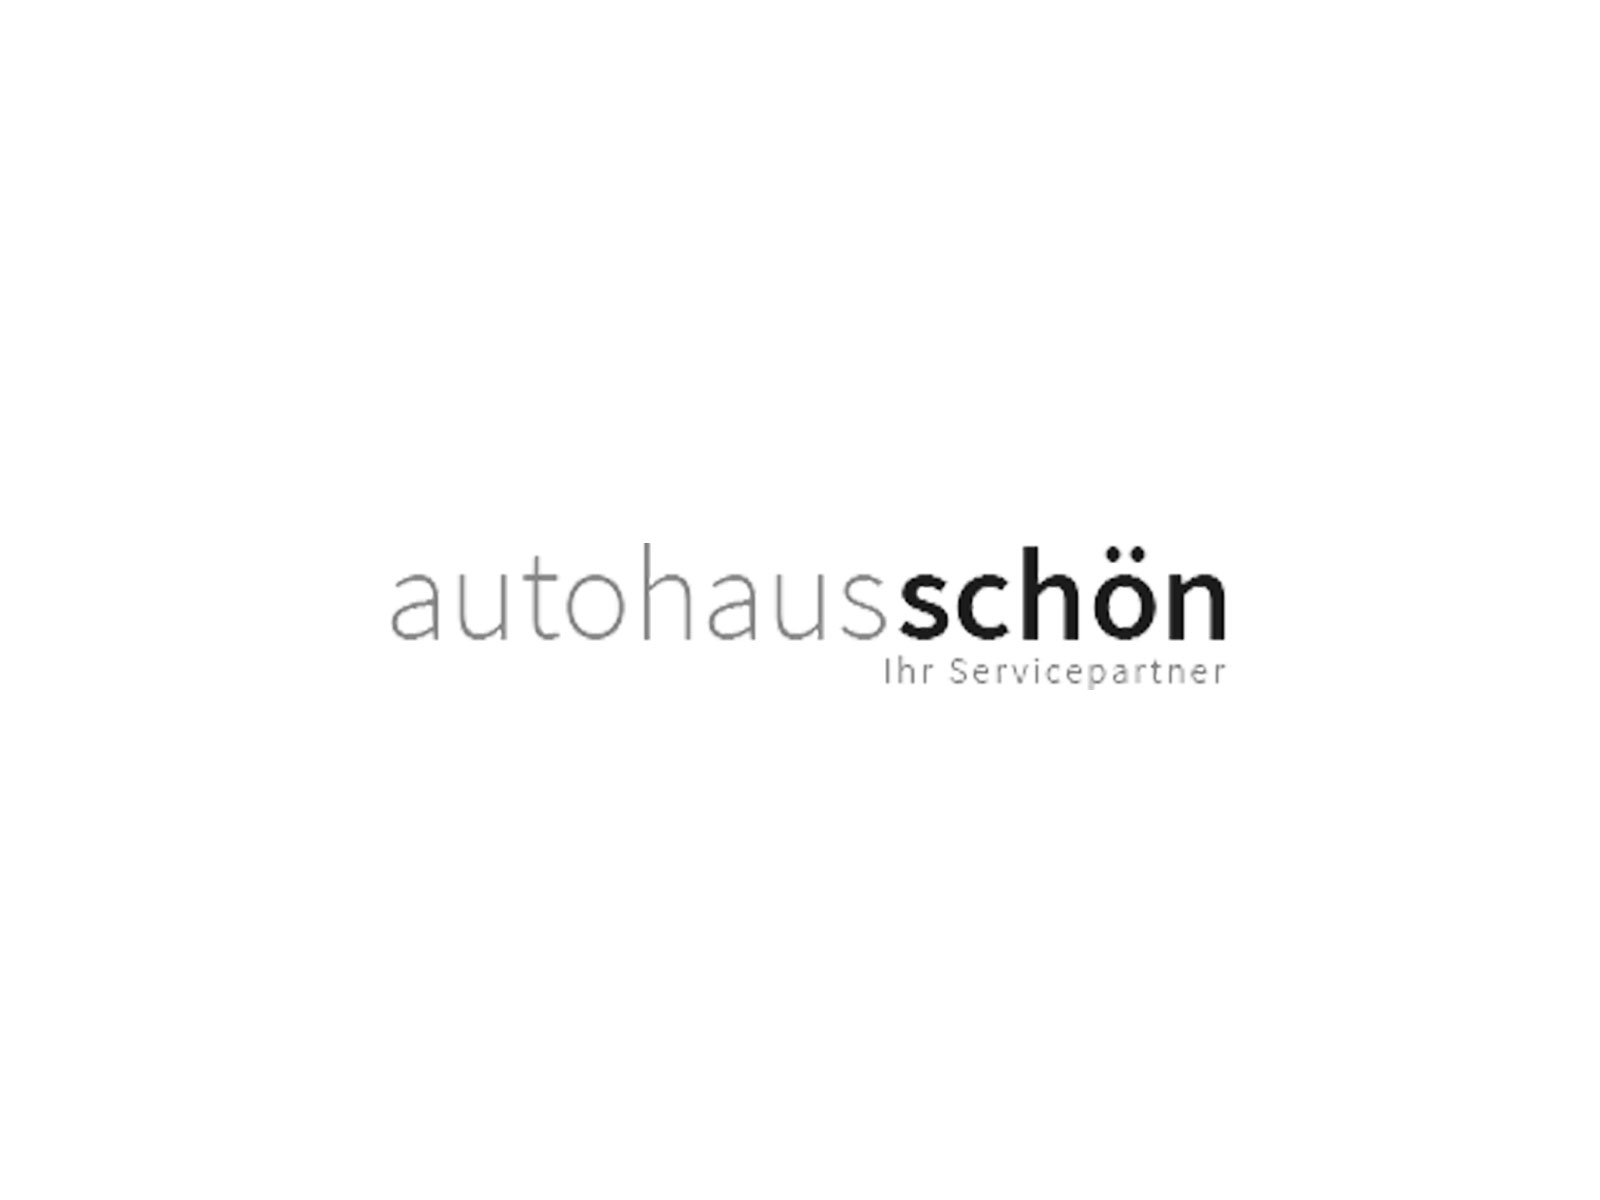 Autohaus Schön GmbH & Co. KG